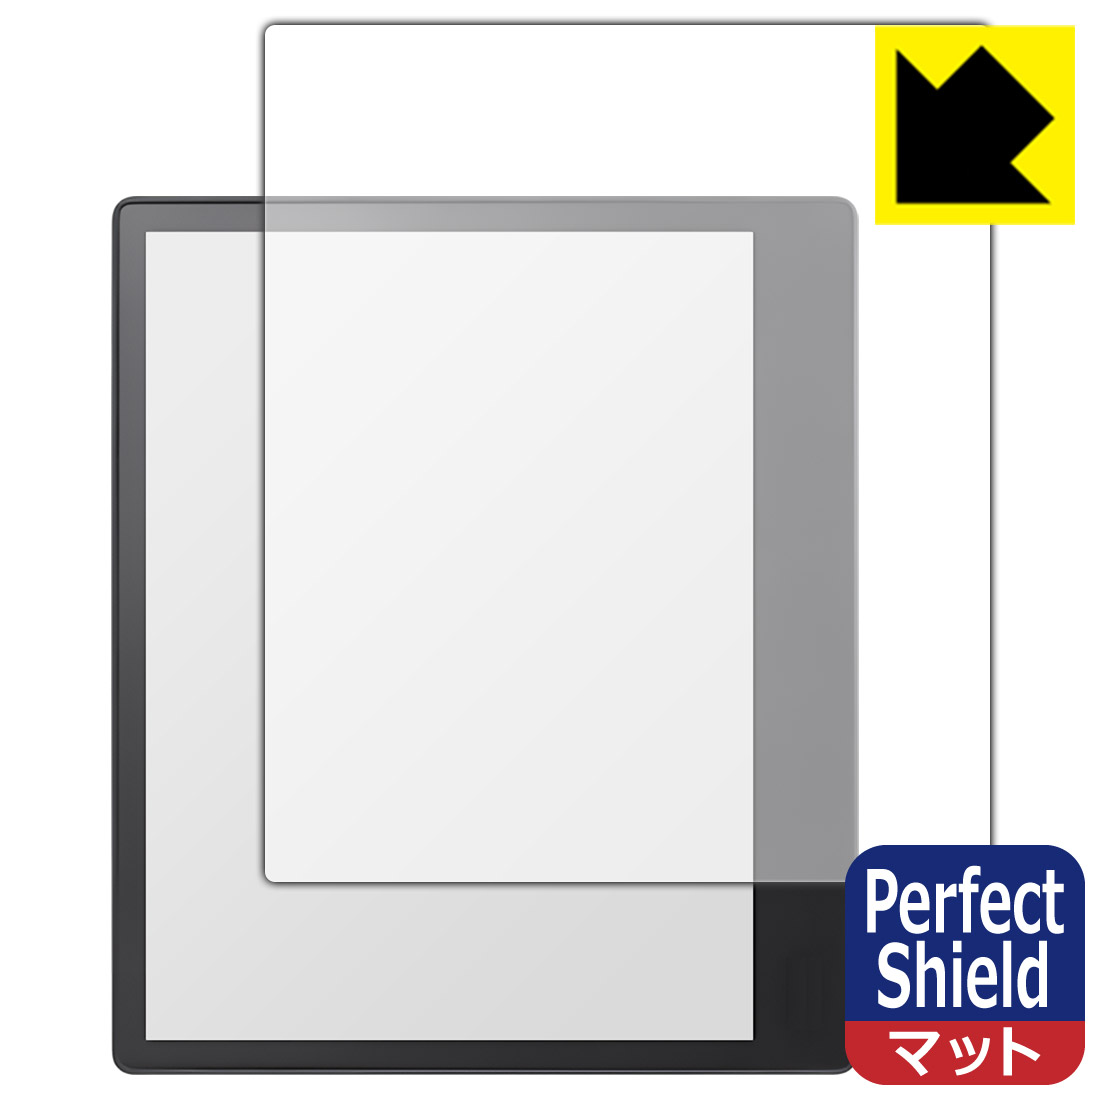 ●対応機種 : Kobo Elipsa 2E (コボ エリプサ ツーイー)専用の商品です。●製品内容 : 画面用フィルム3枚・クリーニングワイプ1個●「Perfect Shield」は画面の反射を抑え、指のすべりもなめらかな指紋や皮脂汚れがつきにくい『アンチグレアタイプ(非光沢)の保護フィルム』●安心の国産素材を使用。日本国内の自社工場で製造し出荷しています。 ★貼り付け失敗交換サービス対象商品★【ポスト投函送料無料】商品は【ポスト投函発送 (追跡可能メール便)】で発送します。お急ぎ、配達日時を指定されたい方は以下のクーポンを同時購入ください。【お急ぎ便クーポン】　プラス110円(税込)で速達扱いでの発送。お届けはポストへの投函となります。【配達日時指定クーポン】　プラス550円(税込)で配達日時を指定し、宅配便で発送させていただきます。【お急ぎ便クーポン】はこちらをクリック【配達日時指定クーポン】はこちらをクリック 　 表面に微細な凹凸を作ることにより、外光を乱反射させギラツキを抑える「アンチグレア加工」がされております。 屋外での太陽光の映り込み、屋内でも蛍光灯などの映り込みが気になるシーンが多い方におすすめです。 また、指紋がついた場合でも目立ちにくいという特長があります。 指滑りはさらさらな使用感でストレスのない操作・入力が可能です。 ハードコート加工がされており、キズや擦れに強くなっています。簡単にキズがつかず長くご利用いただけます。 反射防止のアンチグレア加工で指紋が目立ちにくい上、表面は防汚コーティングがされており、皮脂や汚れがつきにくく、また、落ちやすくなっています。 接着面は気泡の入りにくい特殊な自己吸着タイプです。素材に柔軟性があり、貼り付け作業も簡単にできます。また、はがすときにガラス製フィルムのように割れてしまうことはありません。 貼り直しが何度でもできるので、正しい位置へ貼り付けられるまでやり直すことができます。 最高級グレードの国産素材を日本国内の弊社工場で加工している完全な Made in Japan です。安心の品質をお届けします。 使用上の注意 ●本製品は機器の画面をキズなどから保護するフィルムです。他の目的にはご使用にならないでください。 ●本製品は液晶保護および機器本体を完全に保護することを保証するものではありません。機器の破損、損傷、故障、その他損害につきましては一切の責任を負いかねます。 ●製品の性質上、画面操作の反応が変化したり、表示等が変化して見える場合がございます。 ●貼り付け作業時の失敗(位置ズレ、汚れ、ゆがみ、折れ、気泡など)および取り外し作業時の破損、損傷などについては、一切の責任を負いかねます。 ●水に濡れた状態でのご使用は吸着力の低下などにより、保護フィルムがはがれてしまう場合がございます。防水対応の機器でご使用の場合はご注意ください。 ●アルコール類やその他薬剤を本製品に付着させないでください。表面のコーティングや吸着面が変質するおそれがあります。 ●品質向上のため、仕様などを予告なく変更する場合がございますので、予めご了承ください。